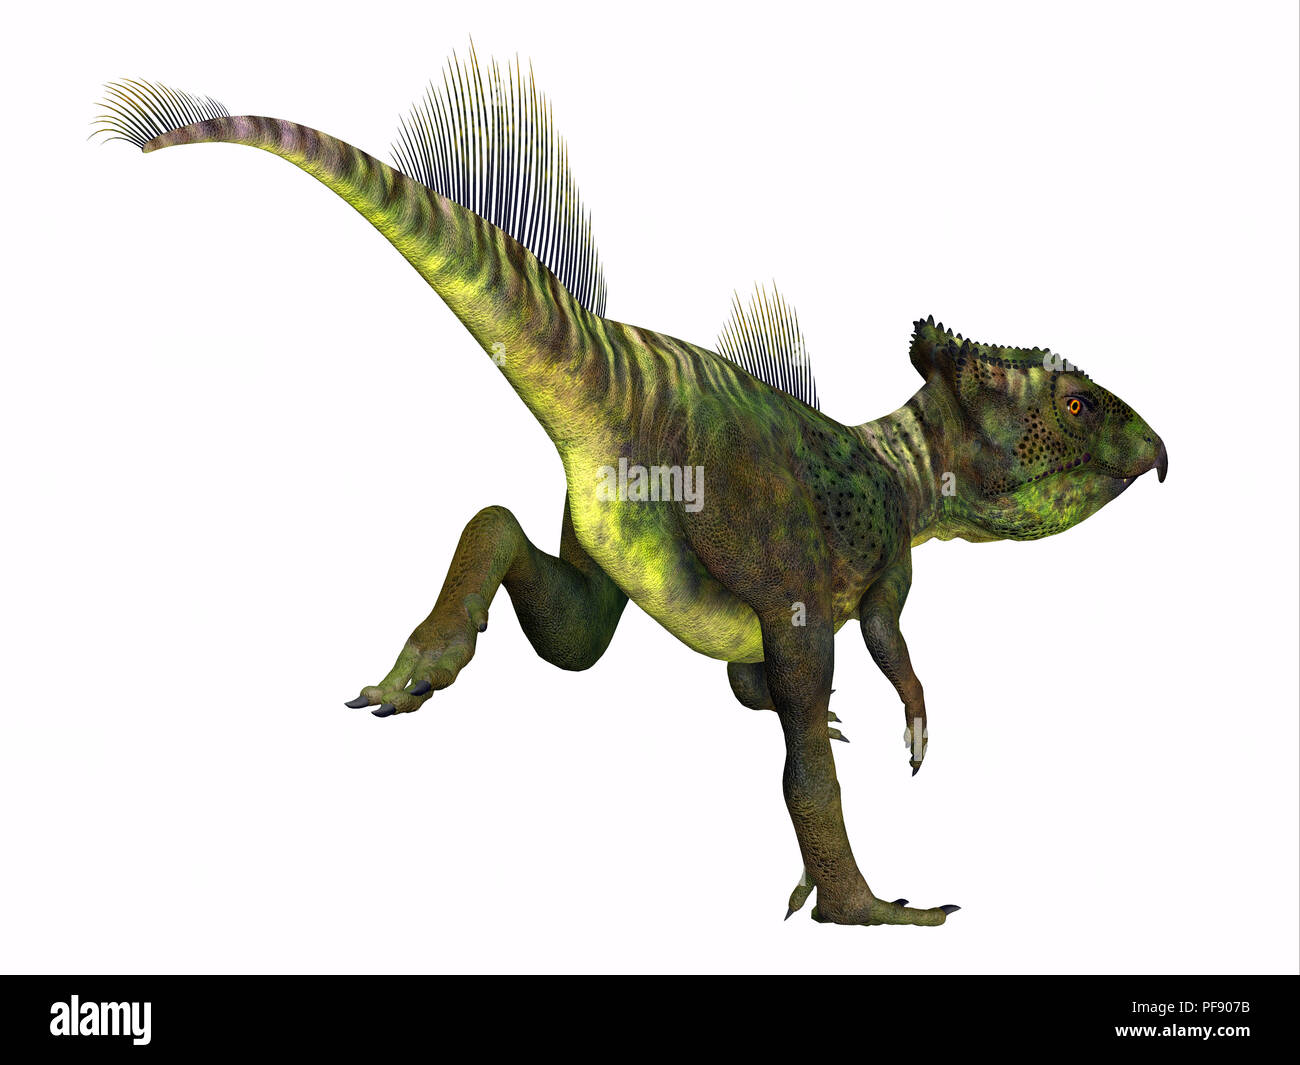 Archaeoceratops Dinosaurier - Archaeoceratops war ein Ceratopsian pflanzenfressende Dinosaurier, die in China in der Kreidezeit lebten. Stockfoto